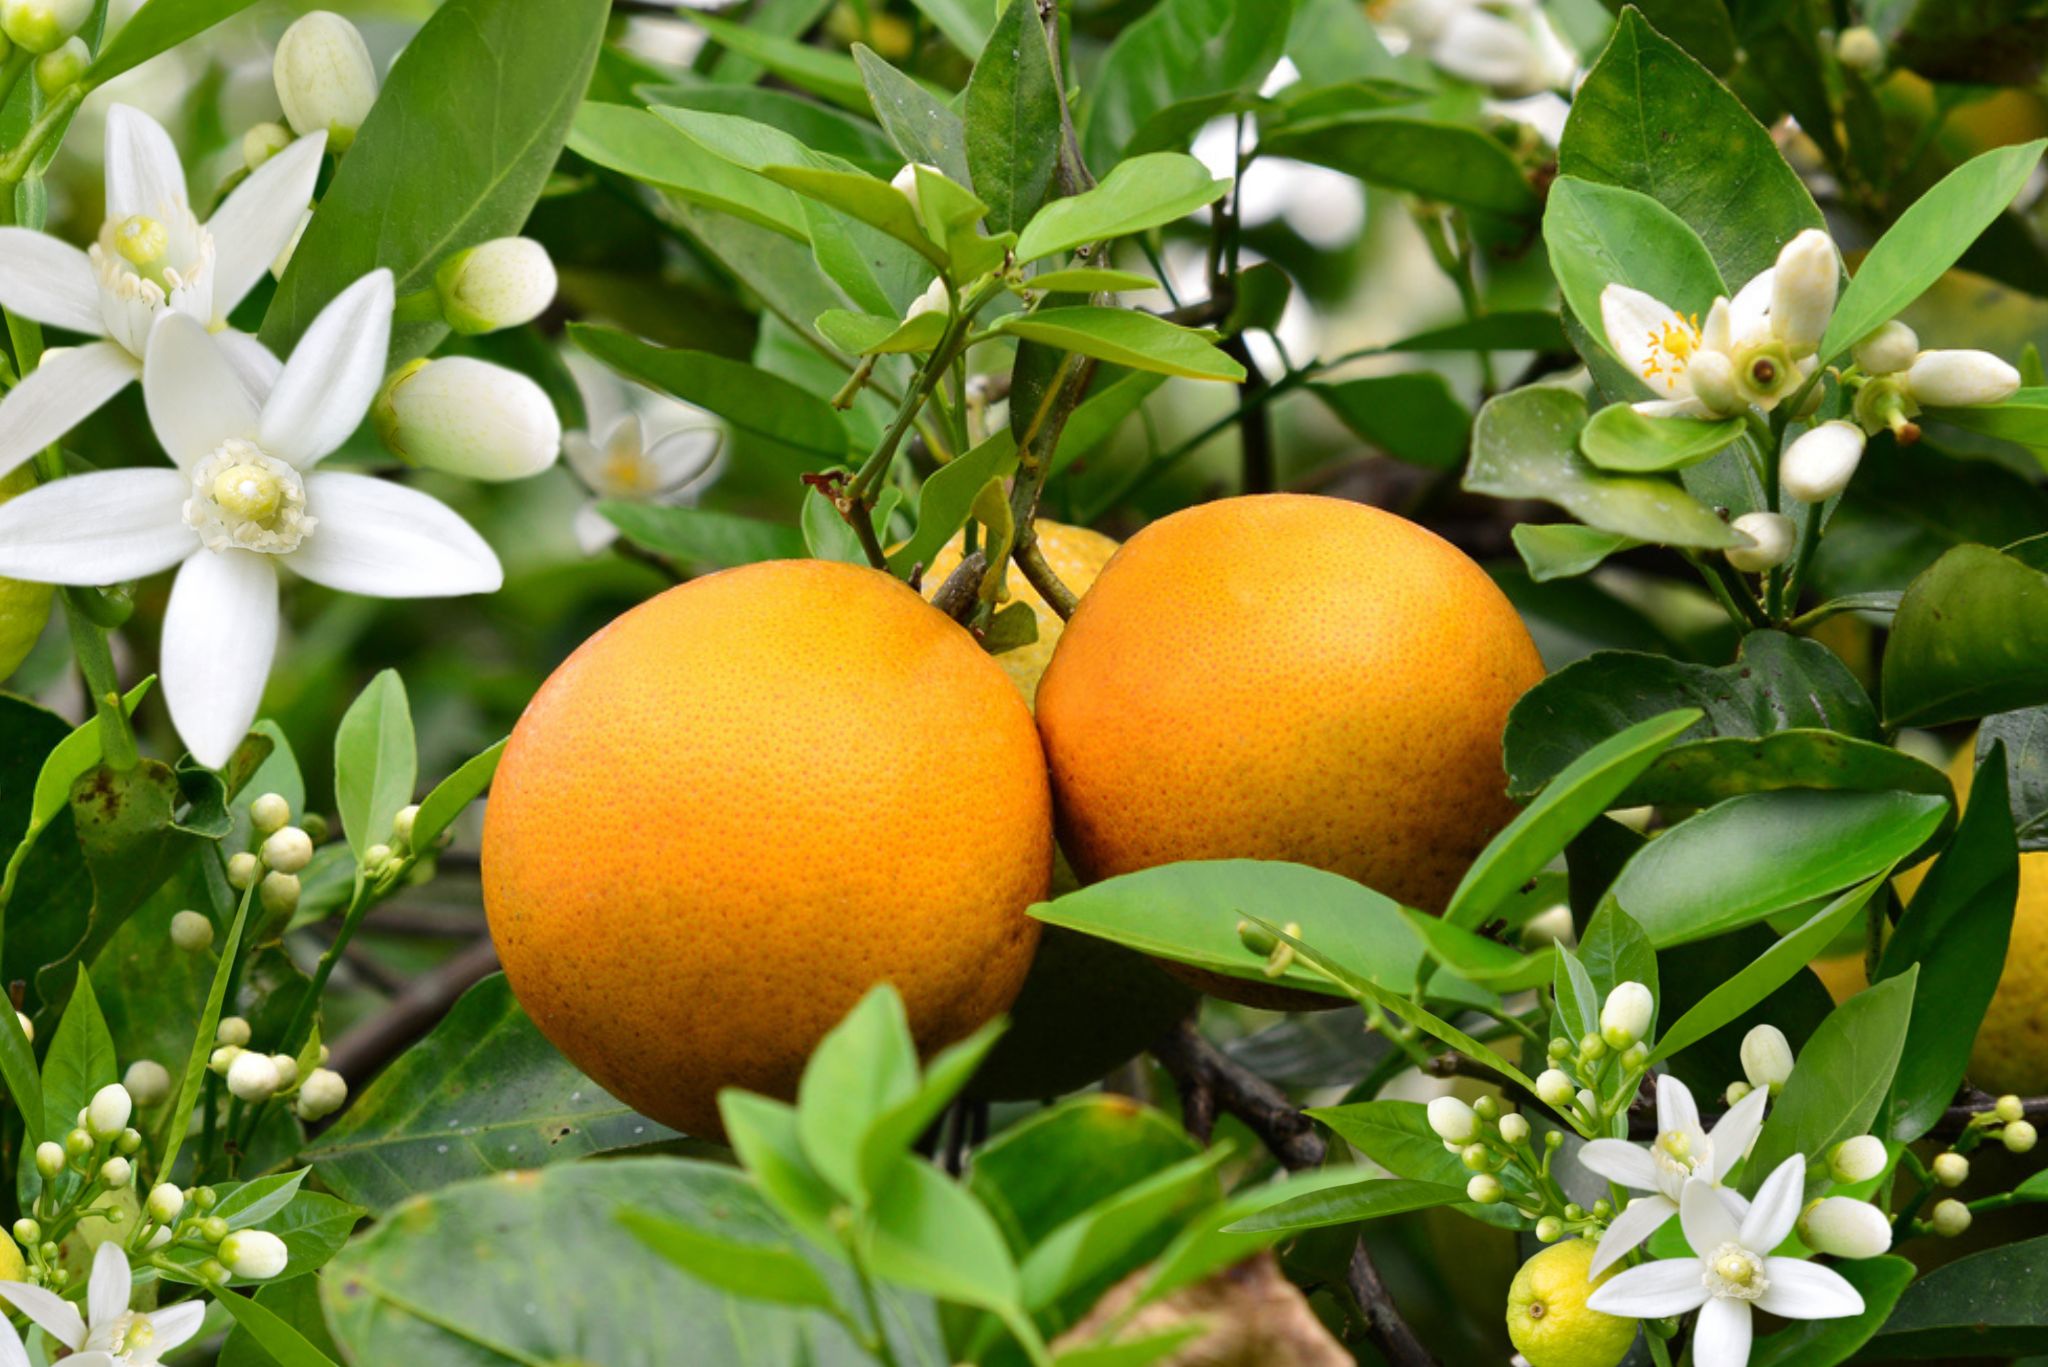 Temple Oranges ripe